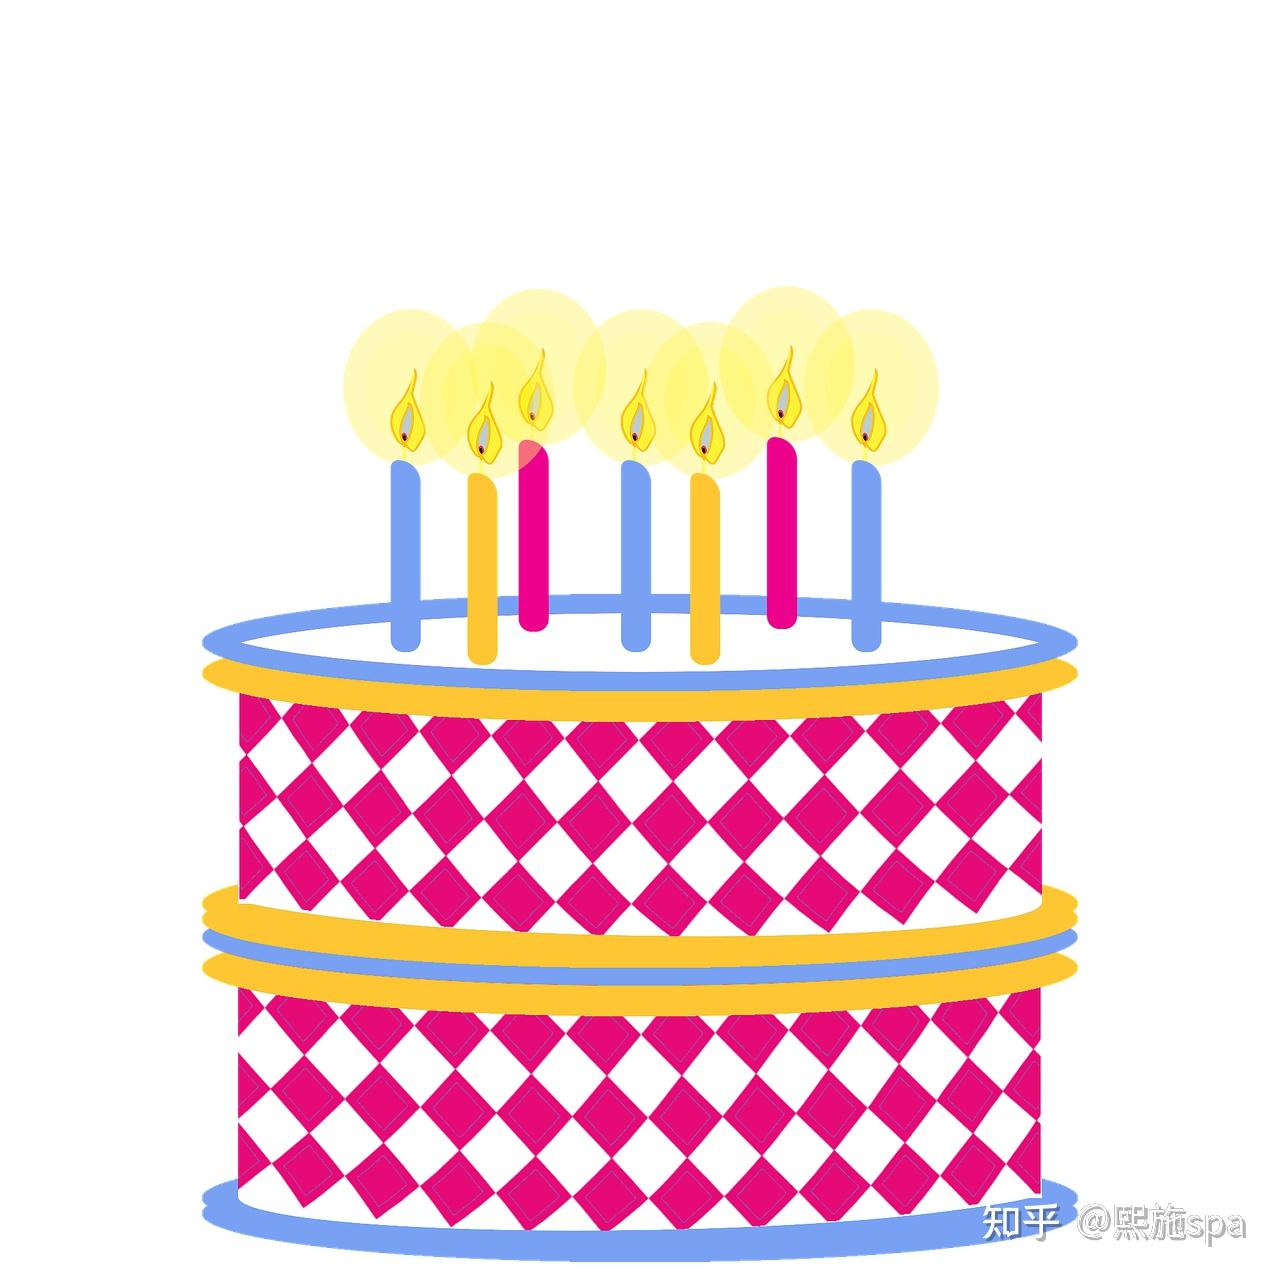 生日祝福语素材-生日祝福语模板-生日祝福语图片免费下载-设图网